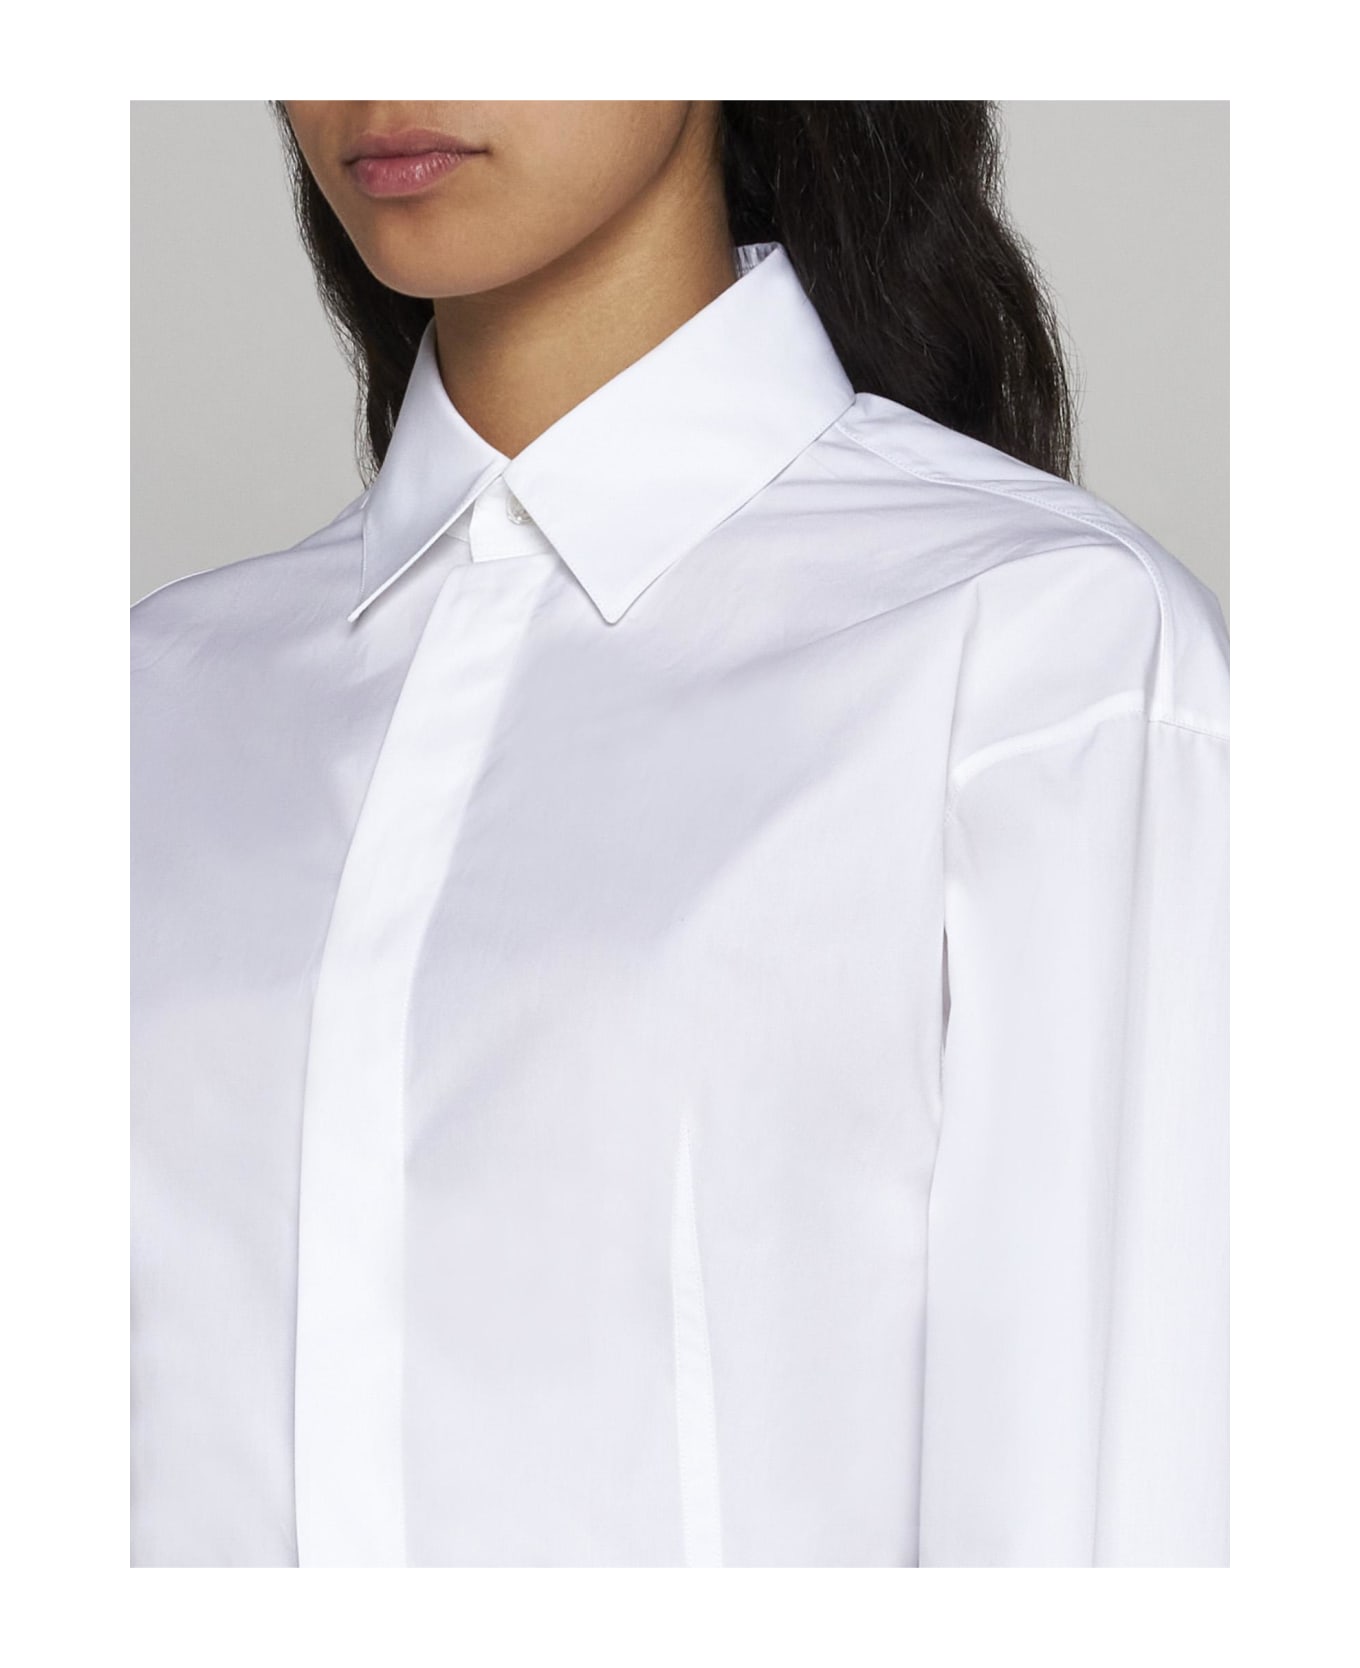 Alaia Cotton Shirt Bodysuit - White ボディスーツ